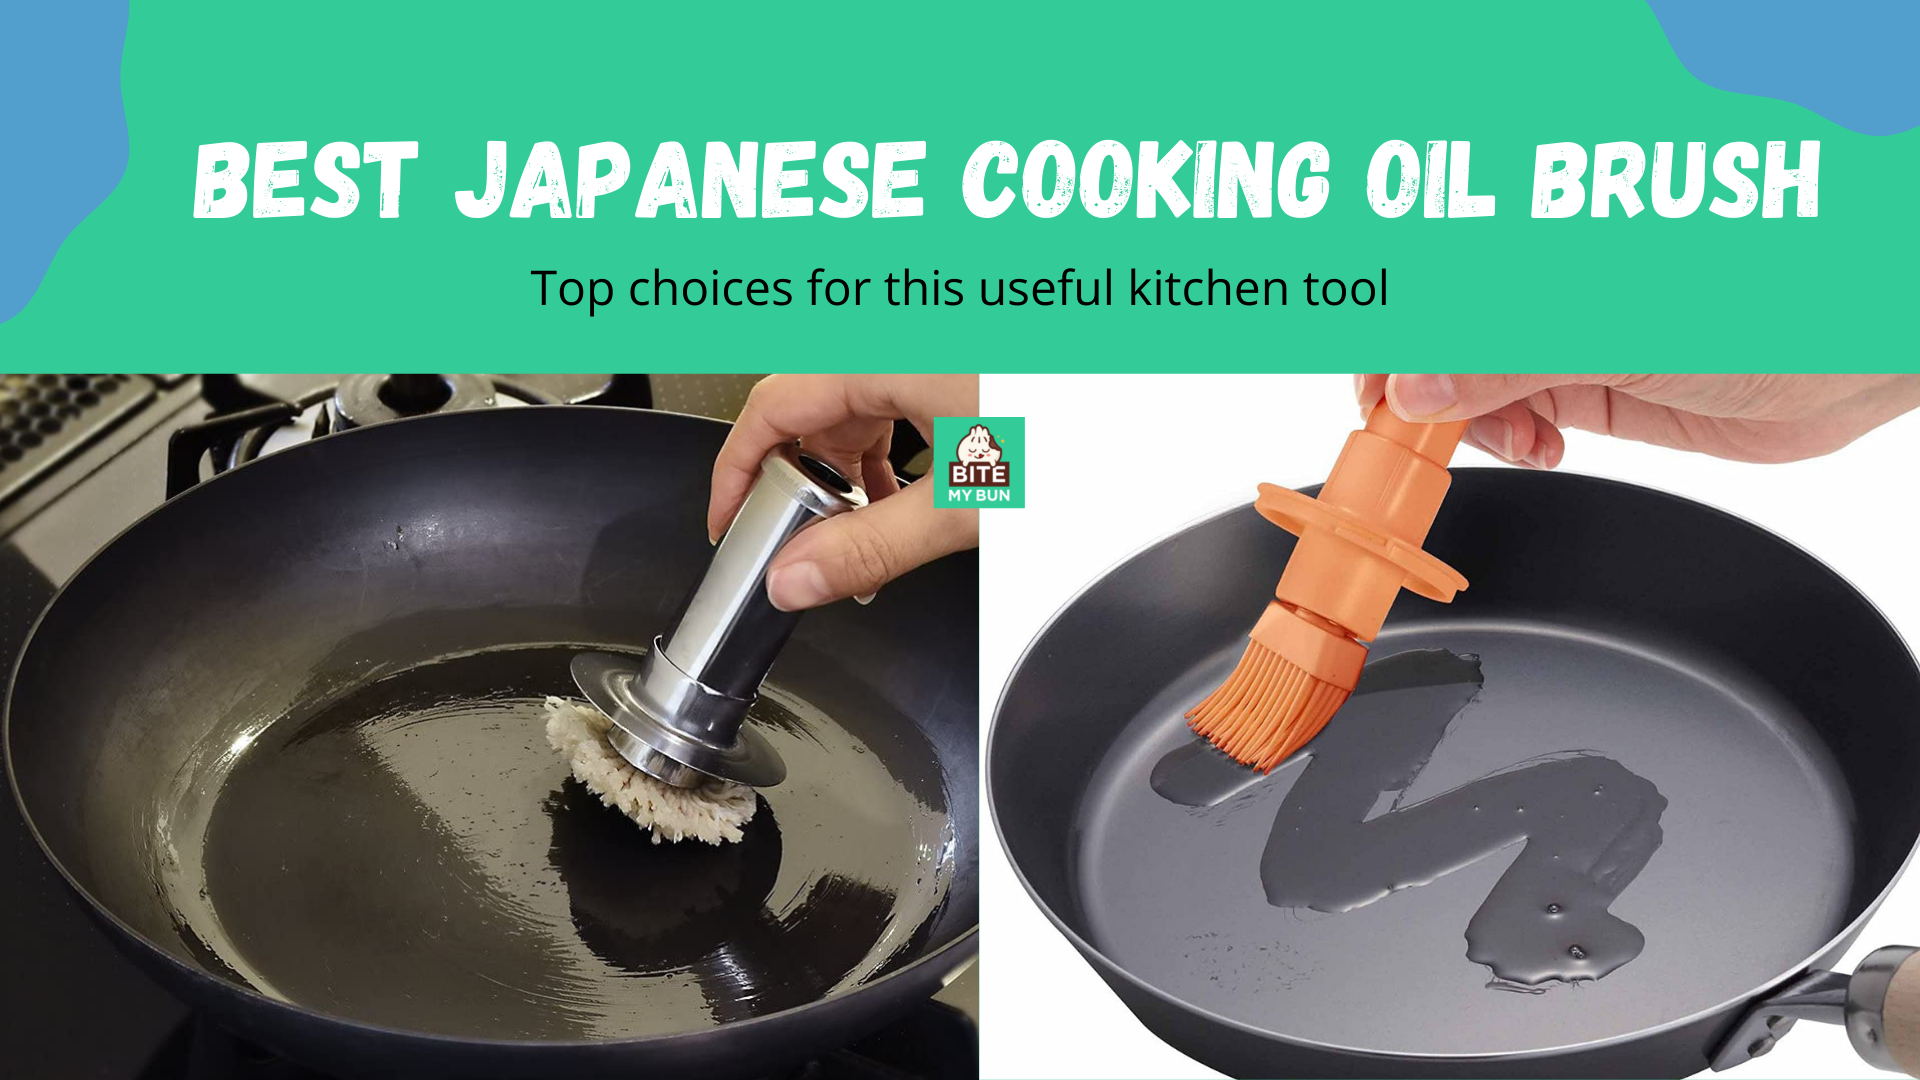 Escova de óleo de cozinha japonesa | As melhores escolhas para esta ferramenta de cozinha útil